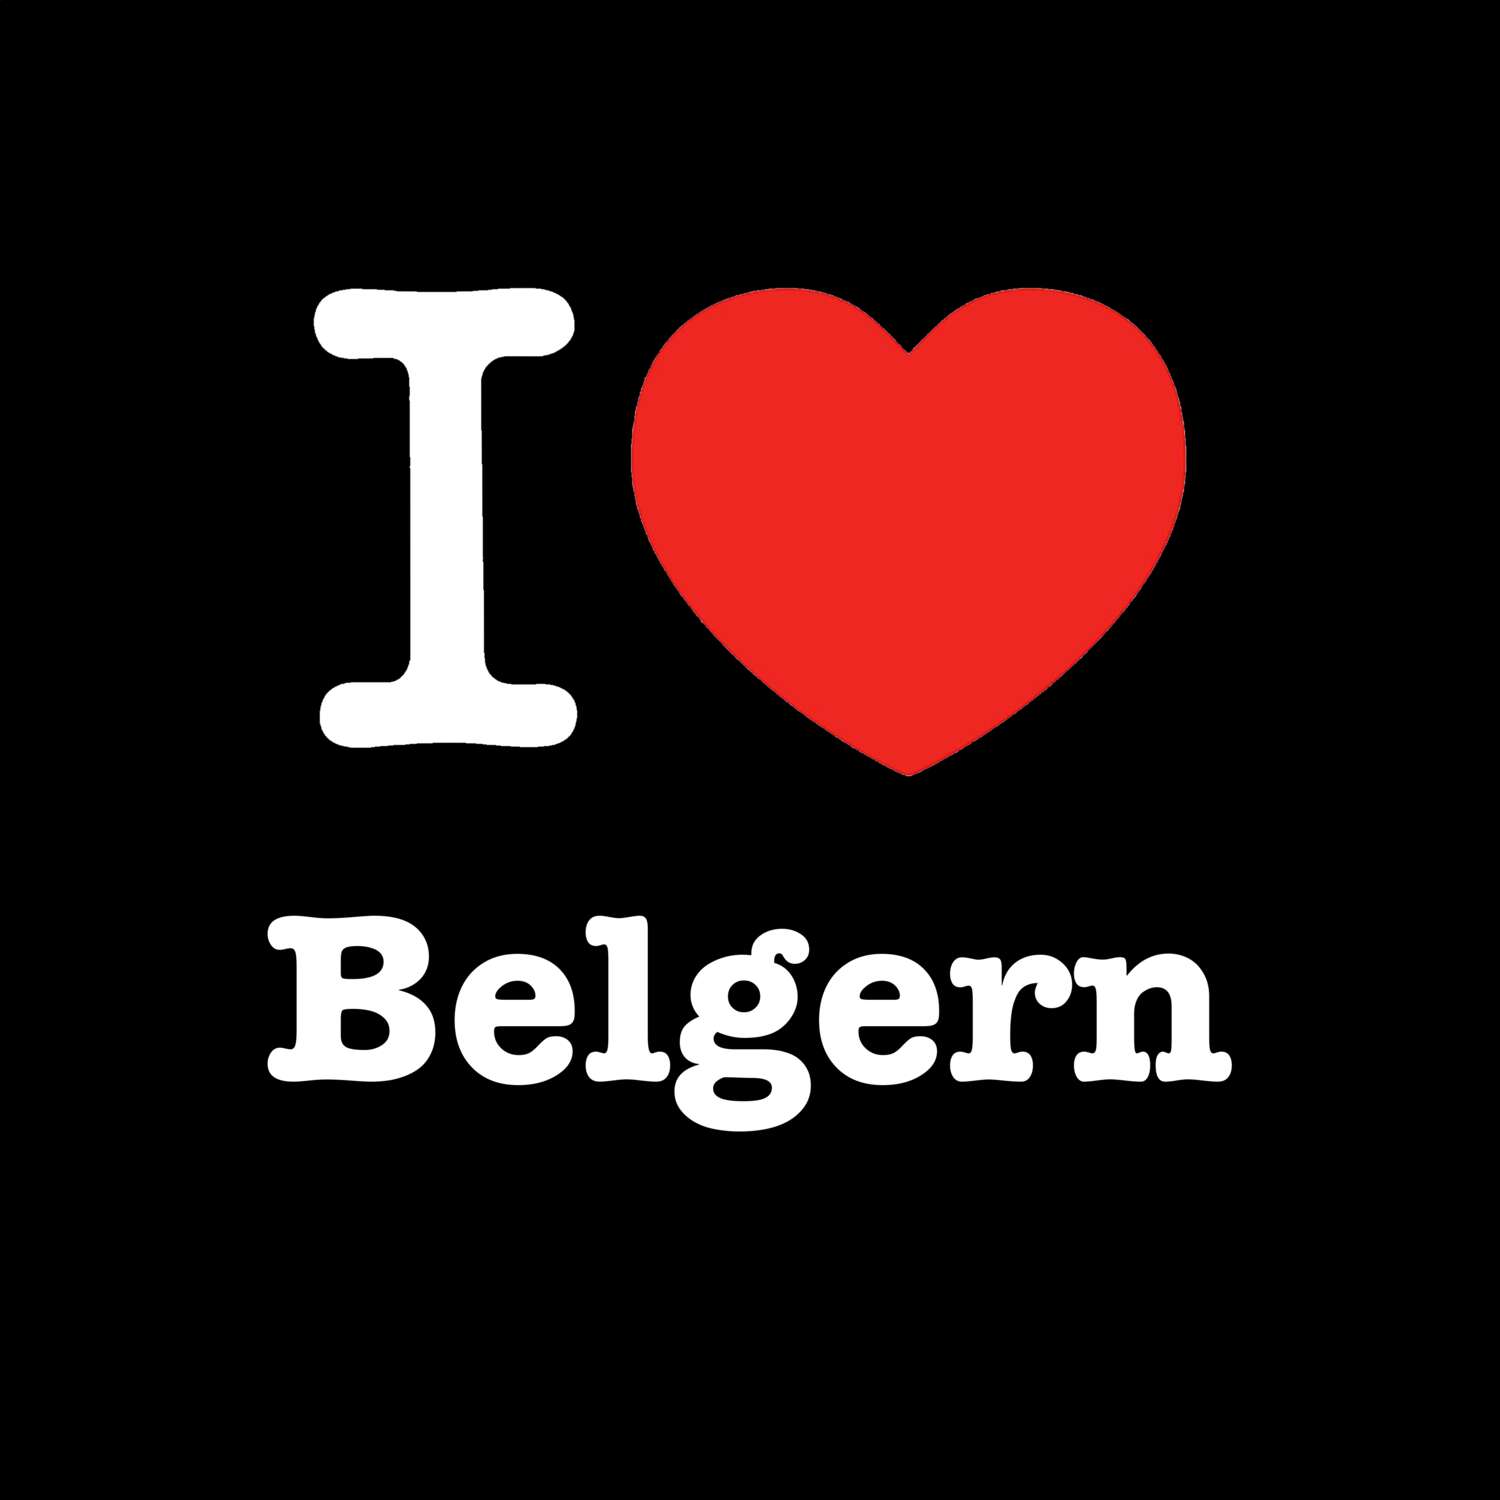 Belgern T-Shirt »I love«